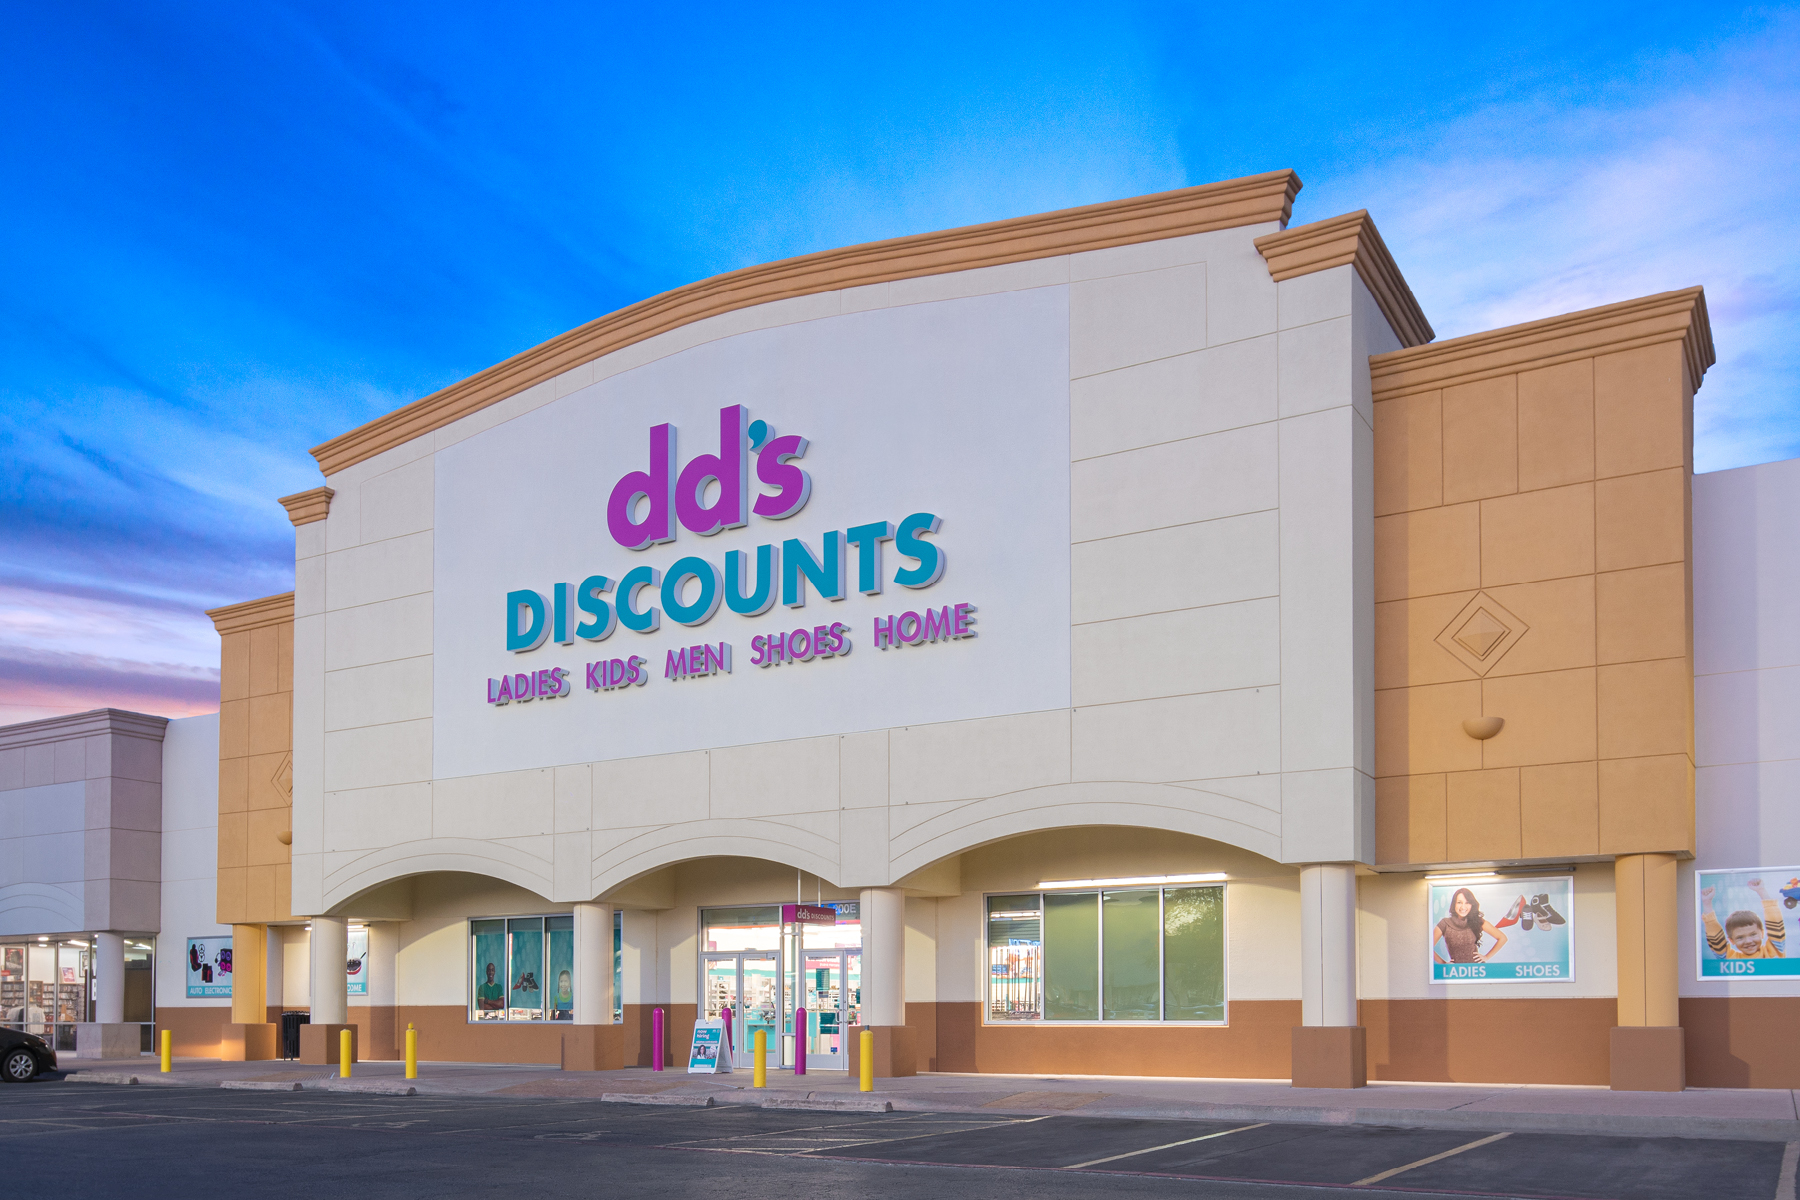 DD's Discounts - Arch-Con Corporation